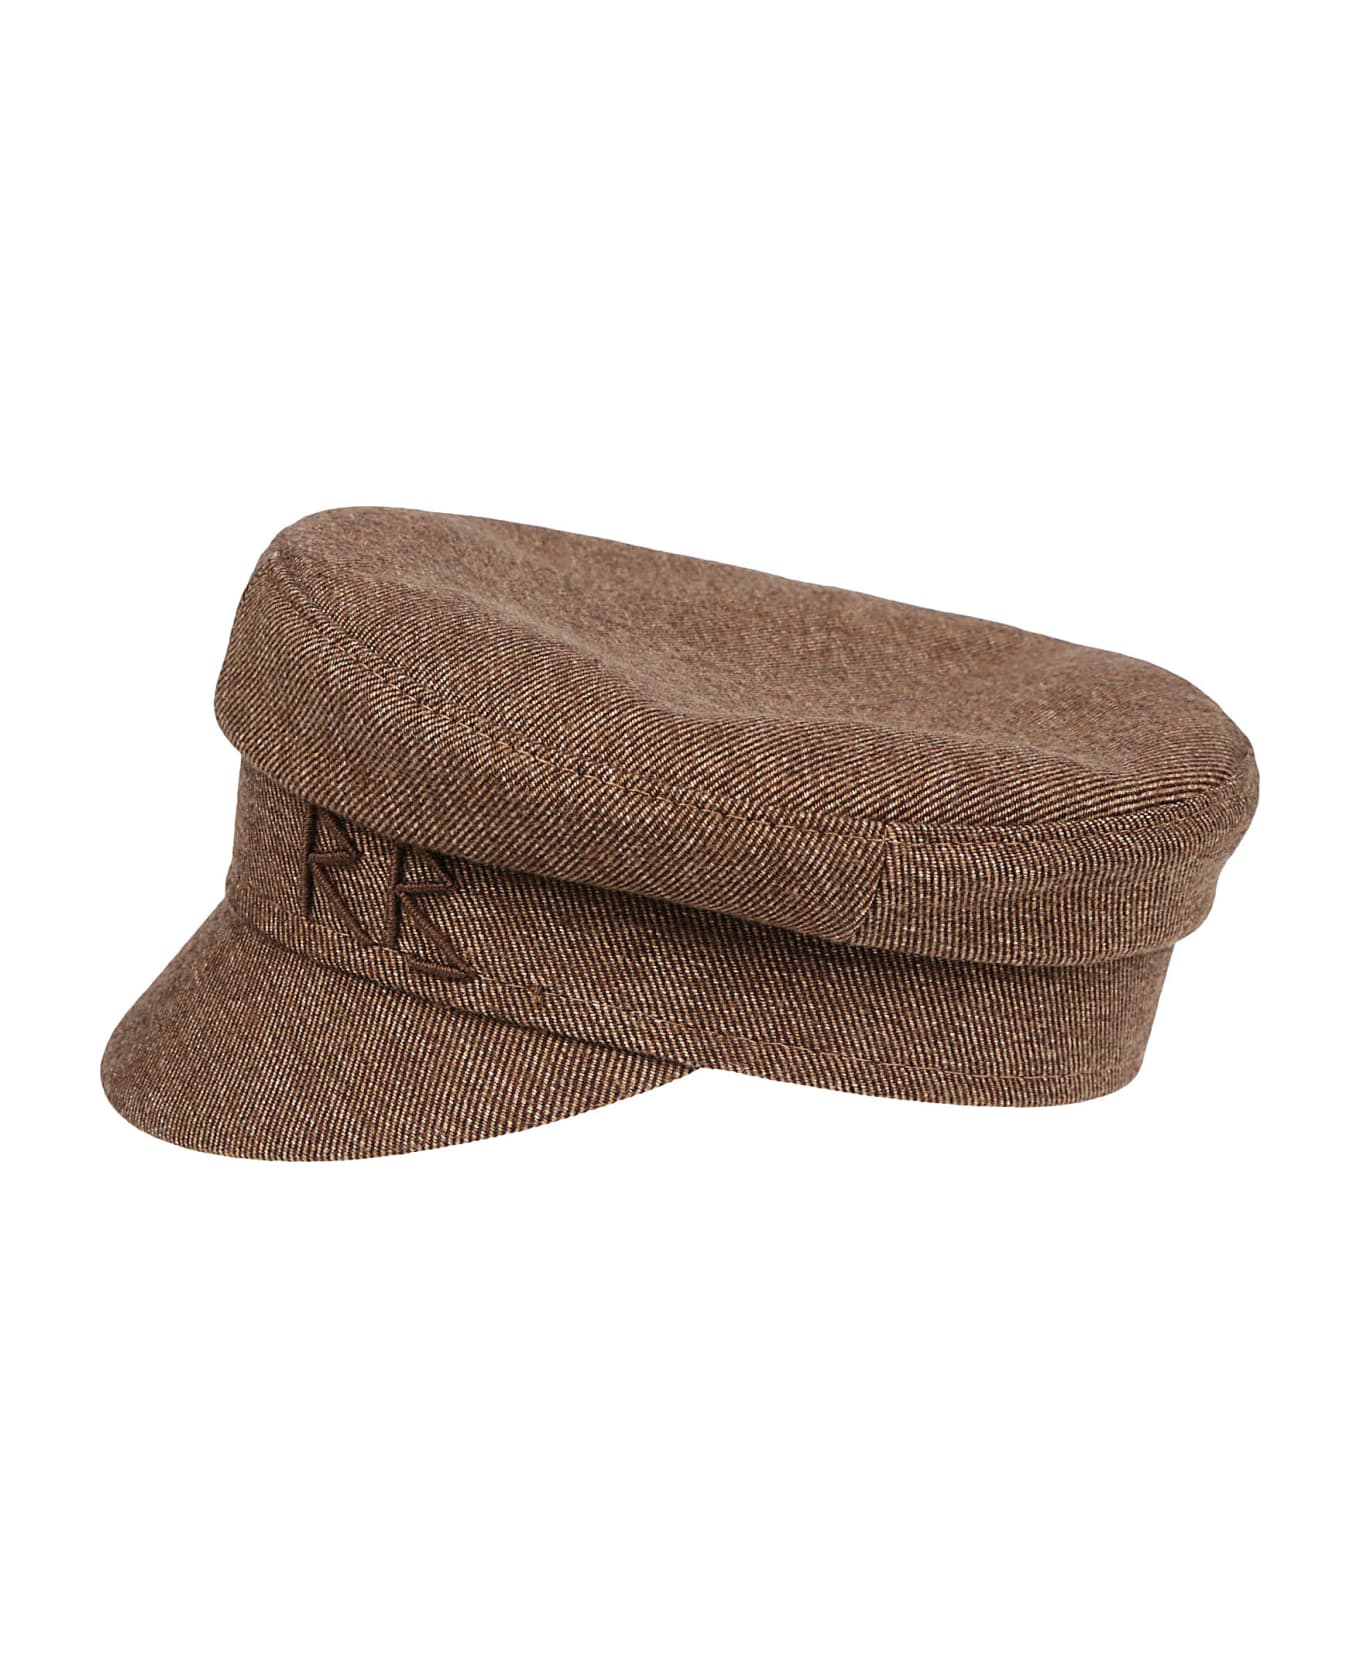 Ruslan Baginskiy Baker Boy Hat - Brown 帽子